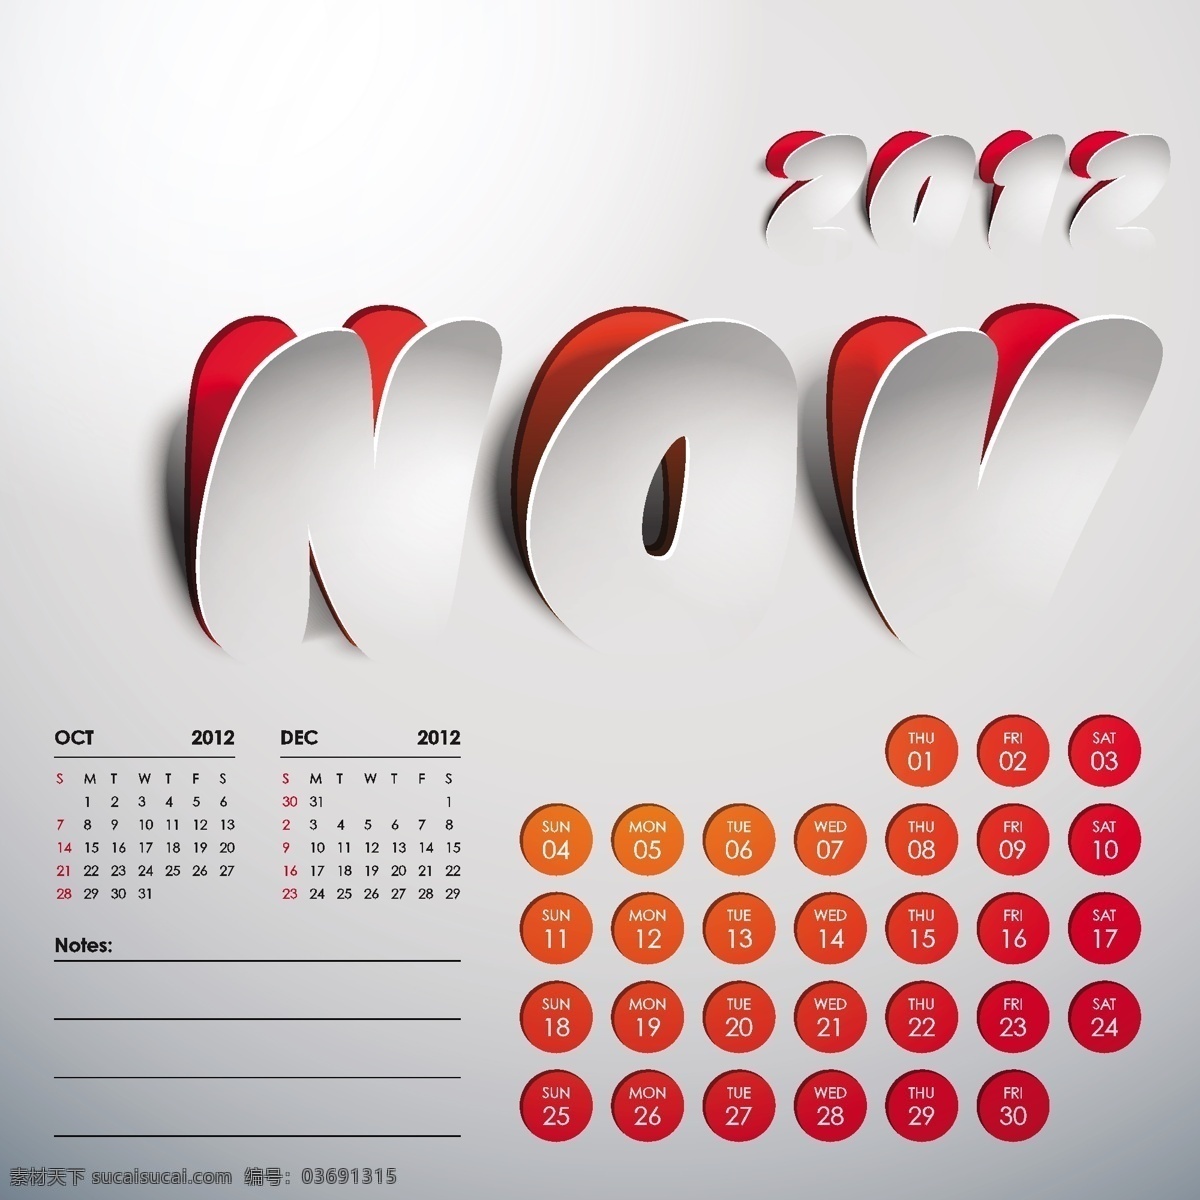 创意 撕 痕 2012 年 月 日历 模板 11月 2012年 创意日历 挂历 矢量素材 撕痕 艺术 嵌入 矢量图 其他矢量图